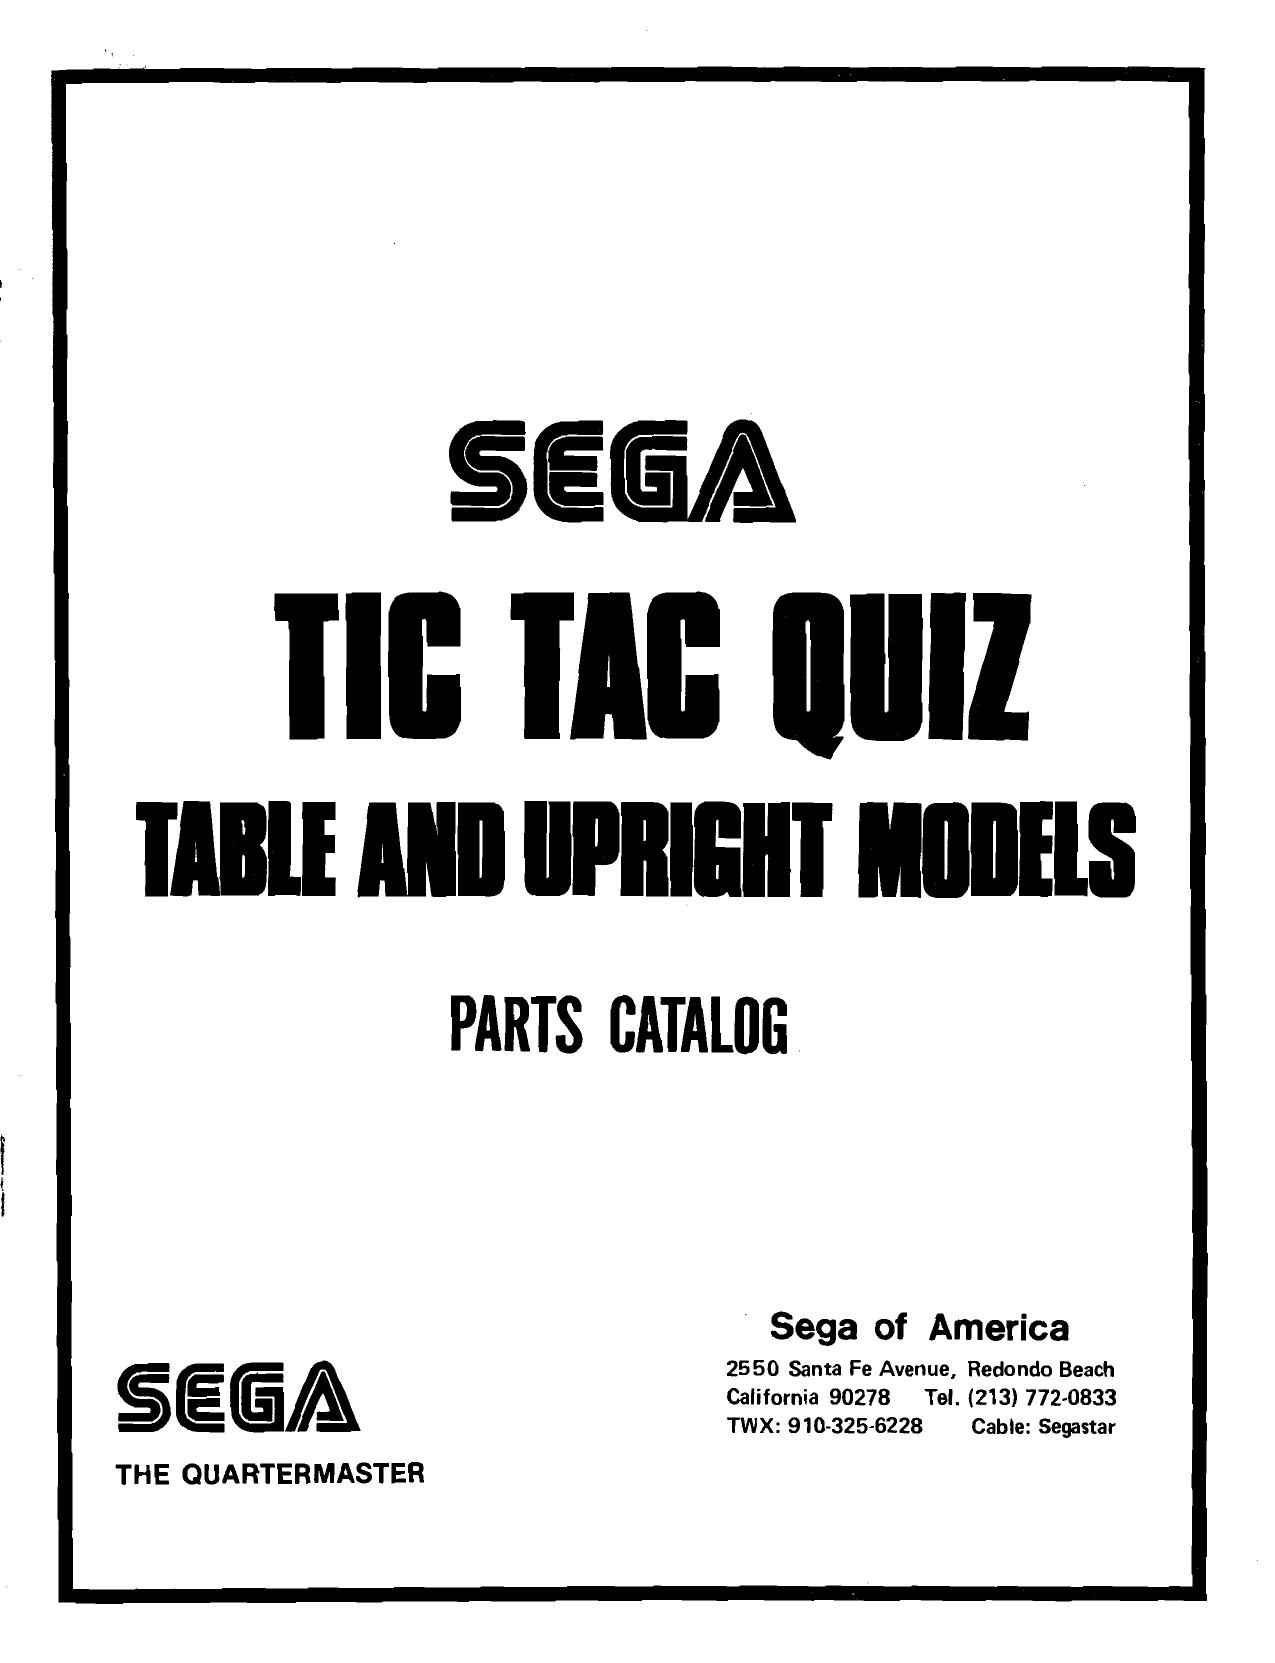 Tic Tac Quiz Table and Upright Models Parts Catalog